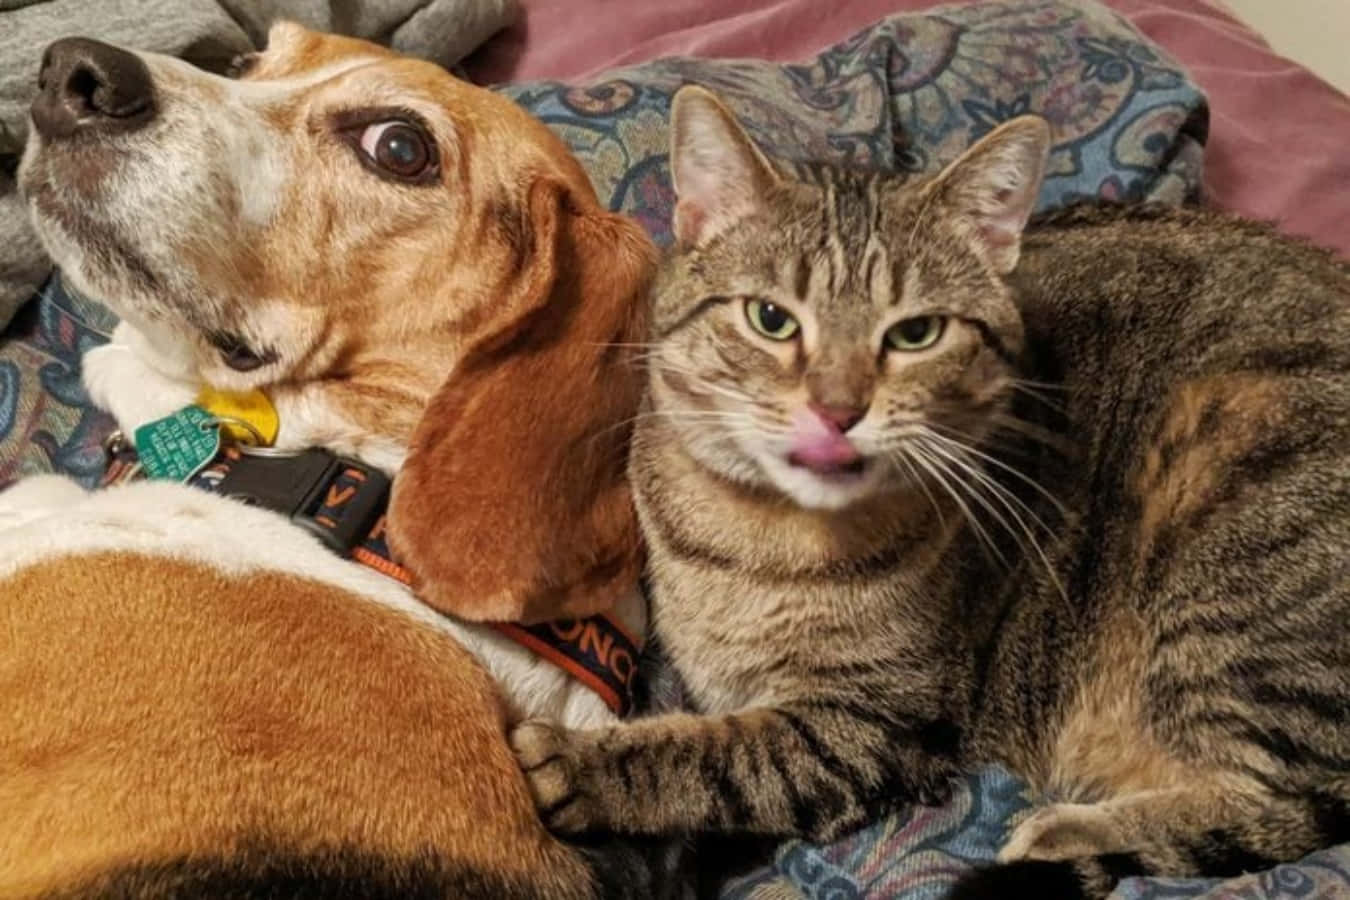 Lustigbild På En Beaglehund Och En Tabbykatt Som Myser Ihop.